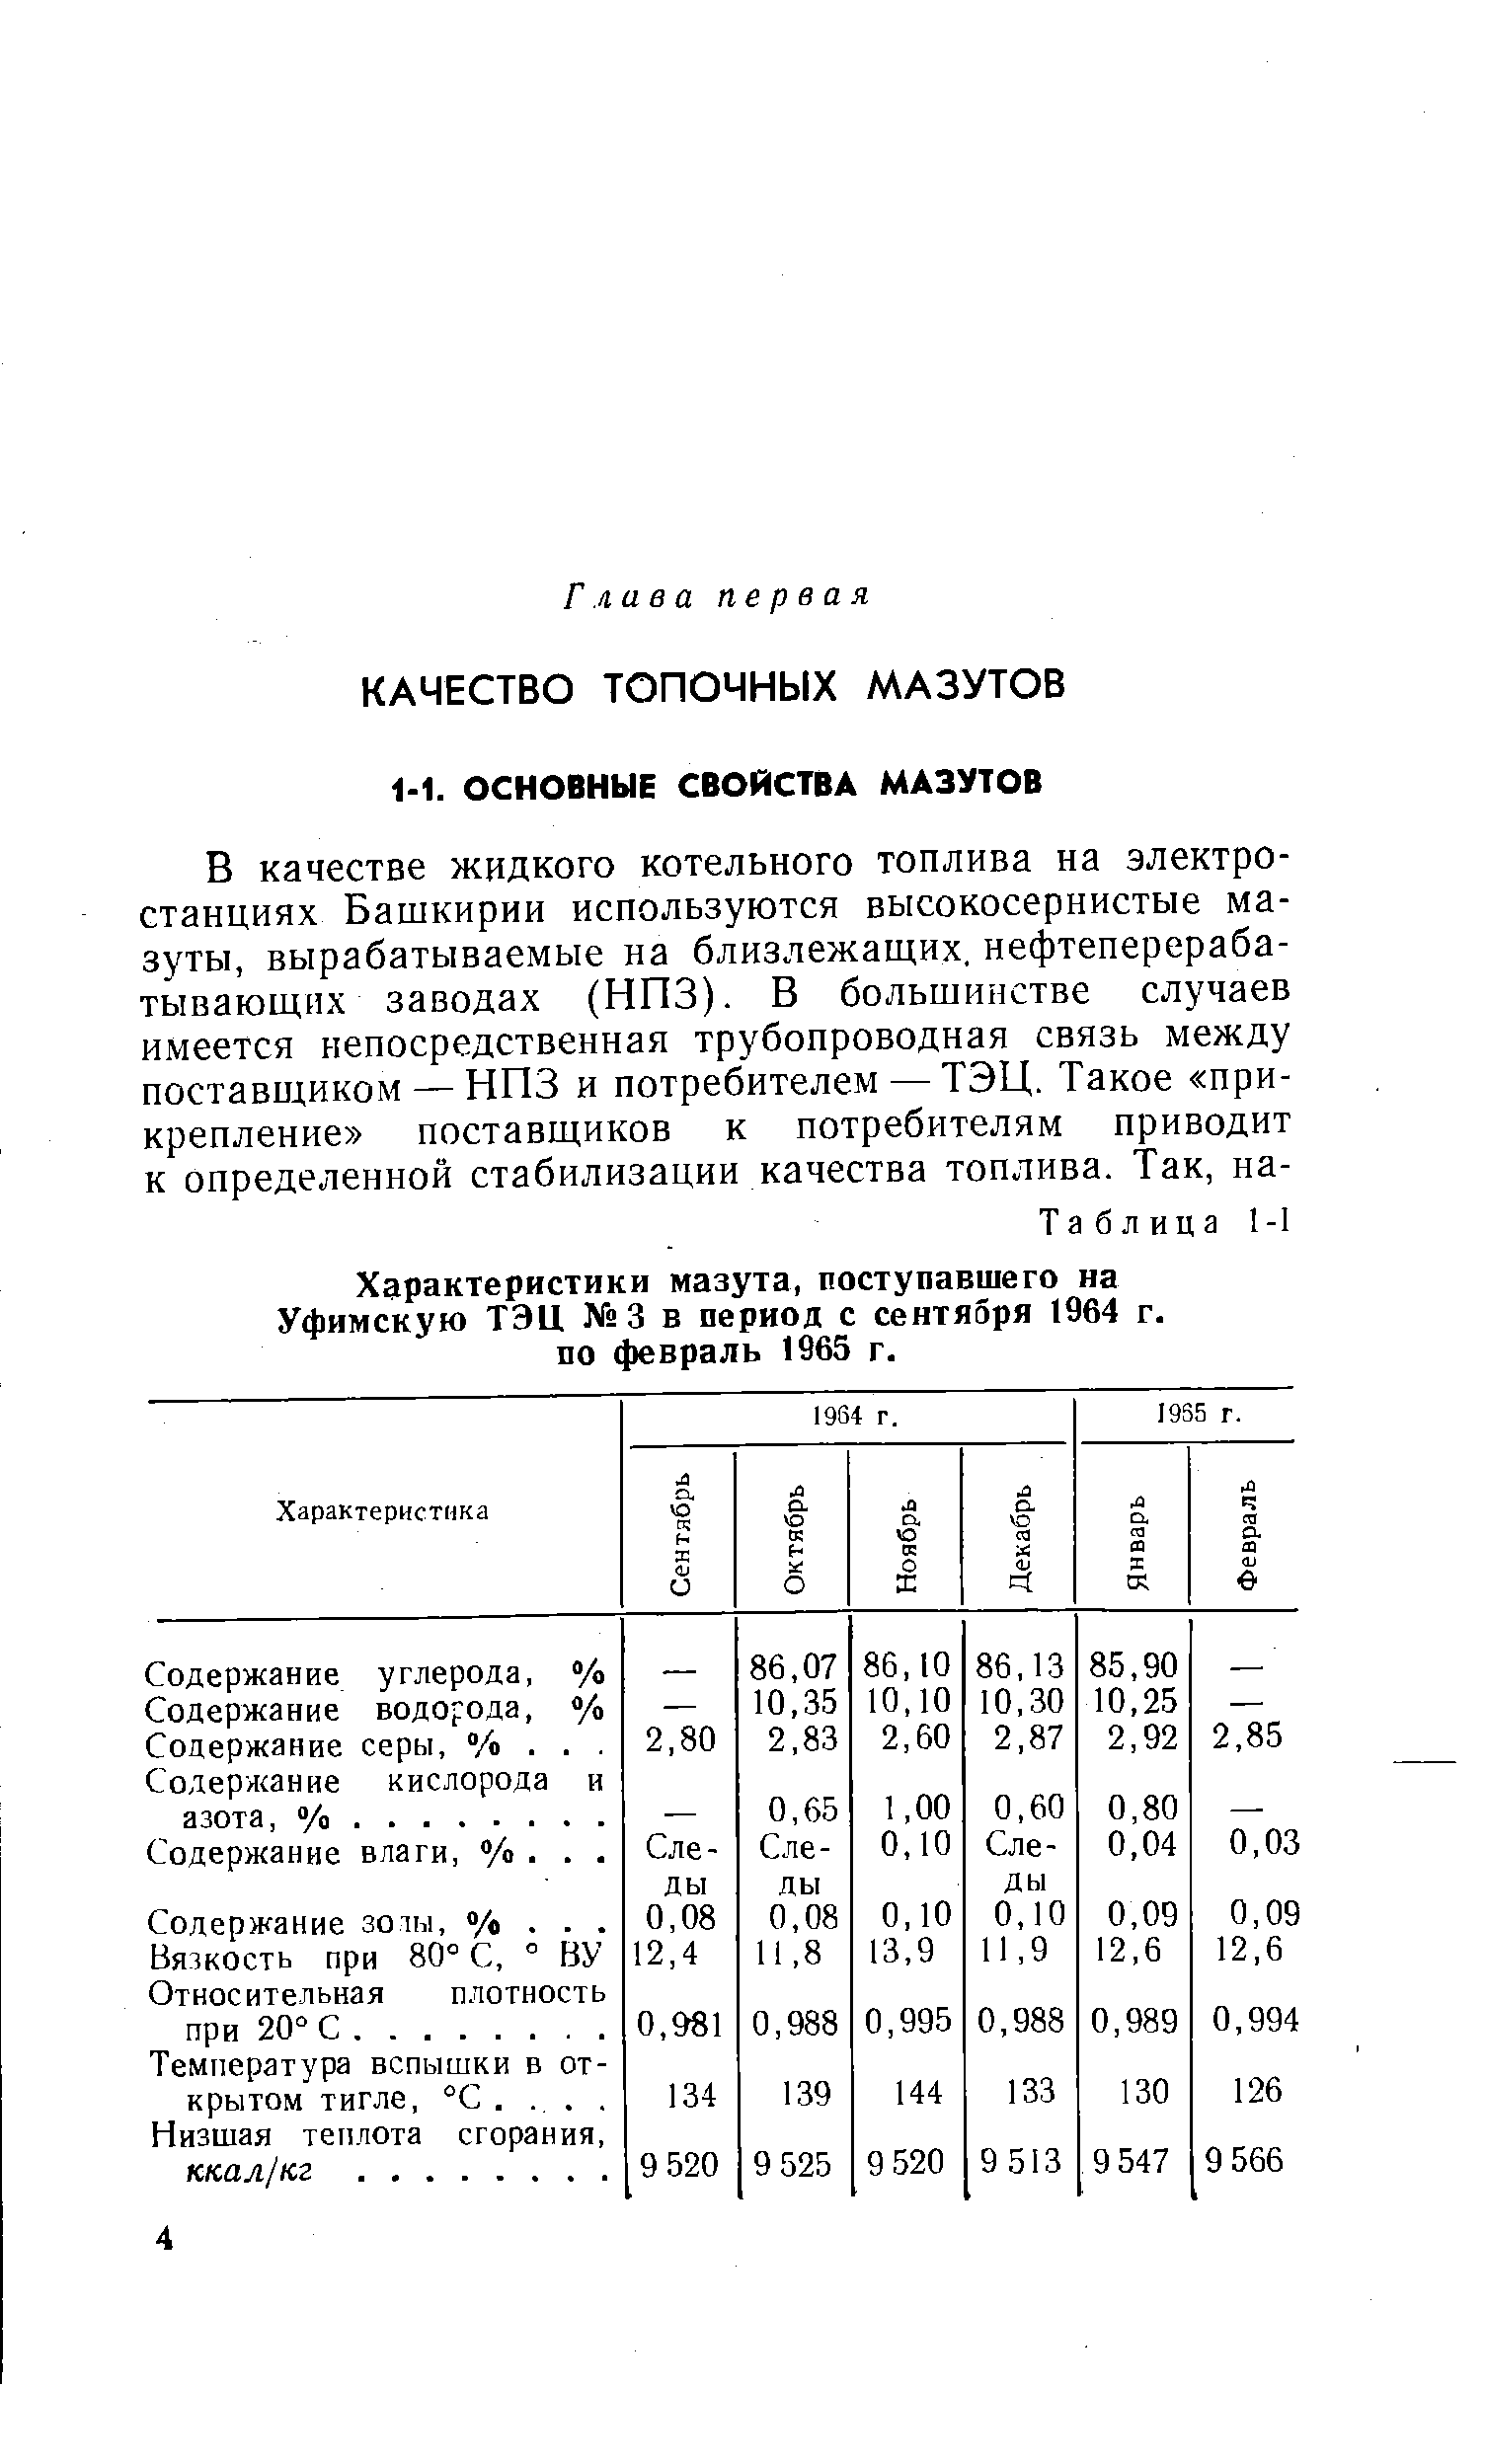 Характеристики мазута, поступавшего на Уфимскую ТЭЦ 3 в период с сентября 1964 г. по февраль 1965 г.